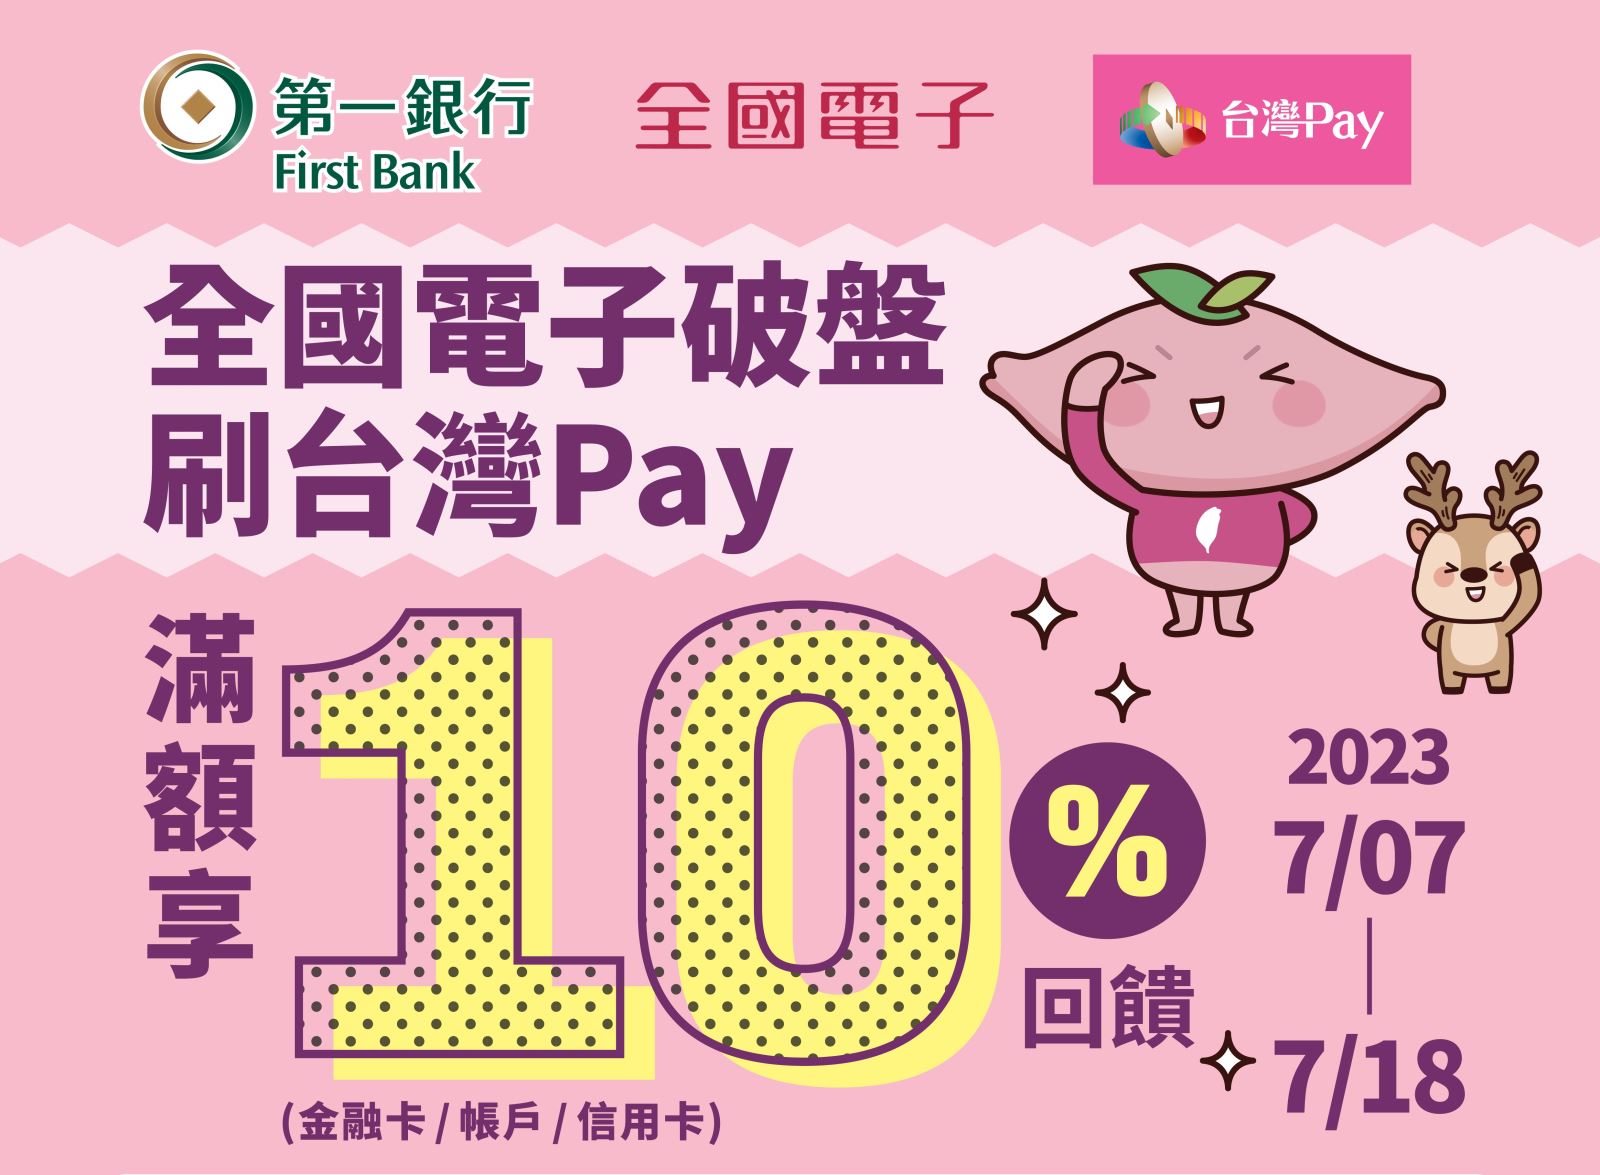 出示「台灣Pay」付款條碼進行支付，單筆消費滿新台幣5,000元以上，即回饋500元「全國電子」折價券 ，單筆消費不累折，消費金額不得拆付。